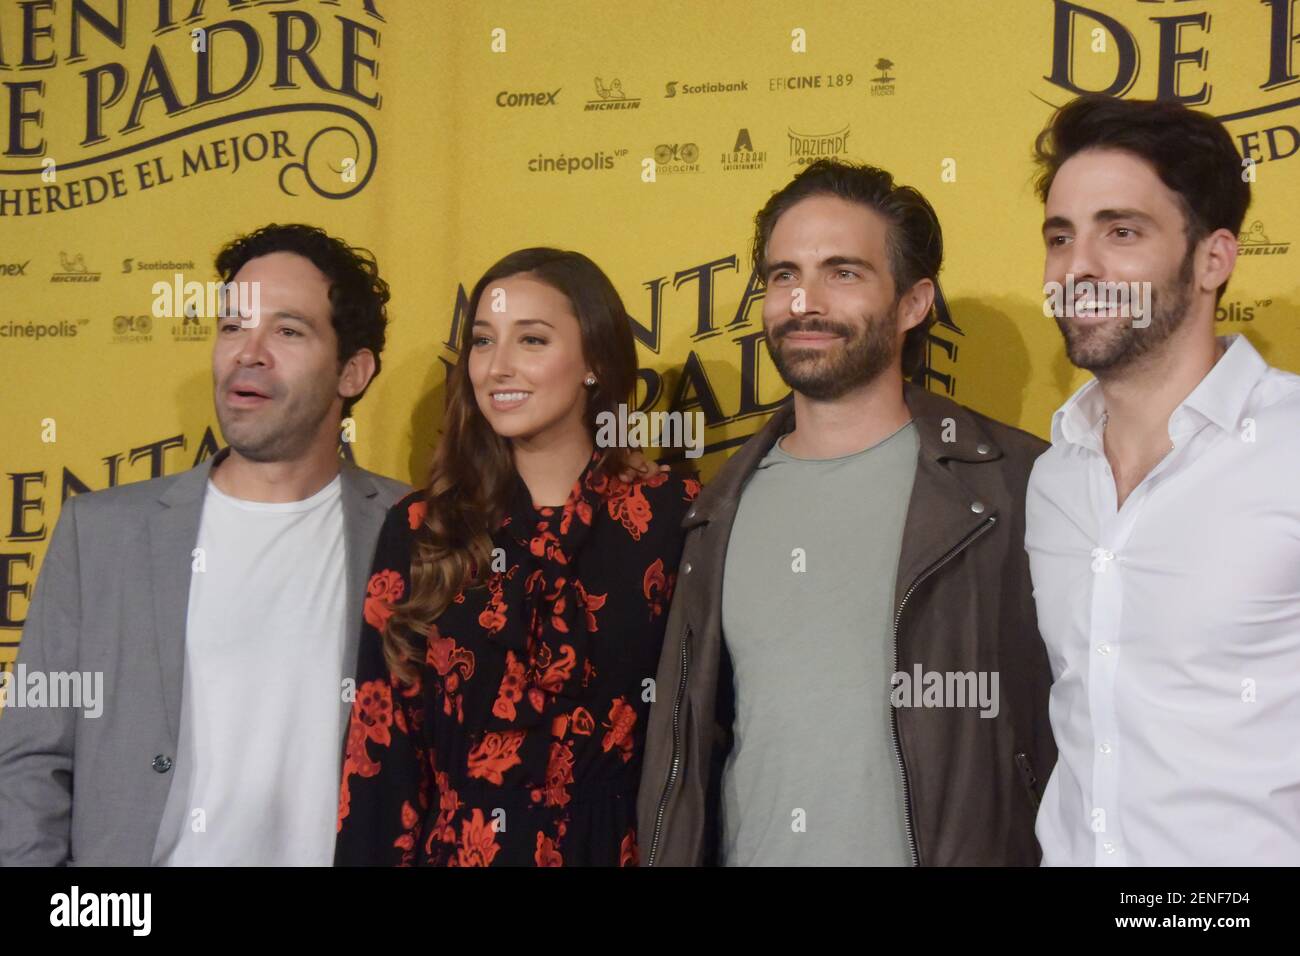 L-R) Mauricio Isaac, Sofía Sisniega, Osvaldo Benavides y Antonio Gaona  posan para fotos durante una rueda de prensa para promover la película 